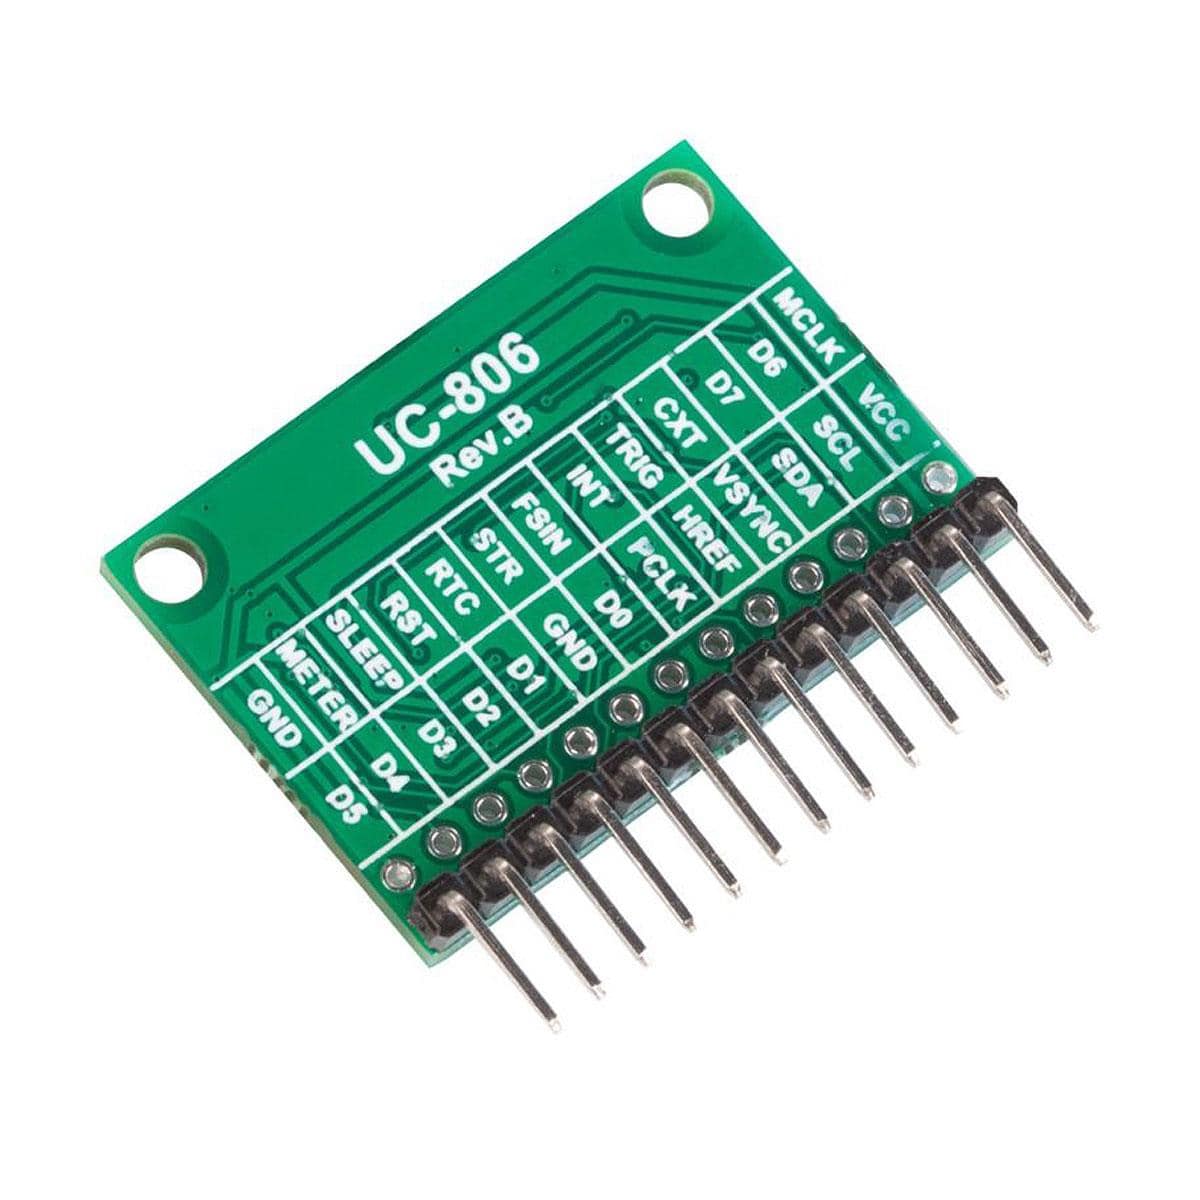 HM0360 VGA Monochrome DVP Camera Module for Arduino GIGA R1 WIFI Board -  Arducam